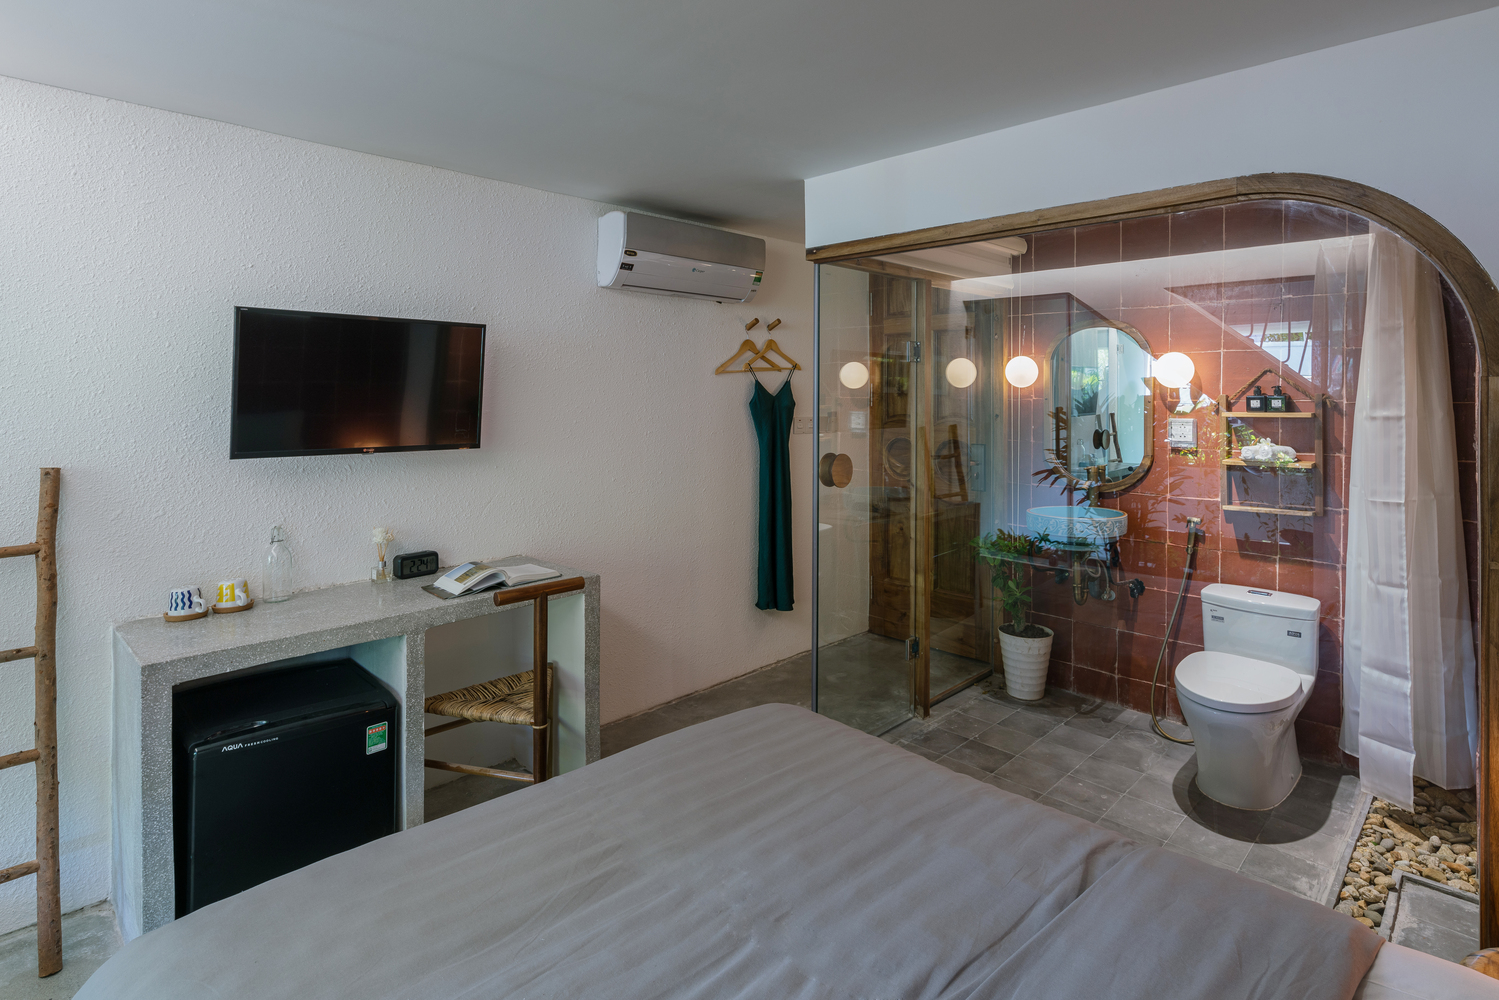 Một phòng ngủ khác với thiết kế nội thất tương tự, tạo cảm giác thư giãn cho người dùng.